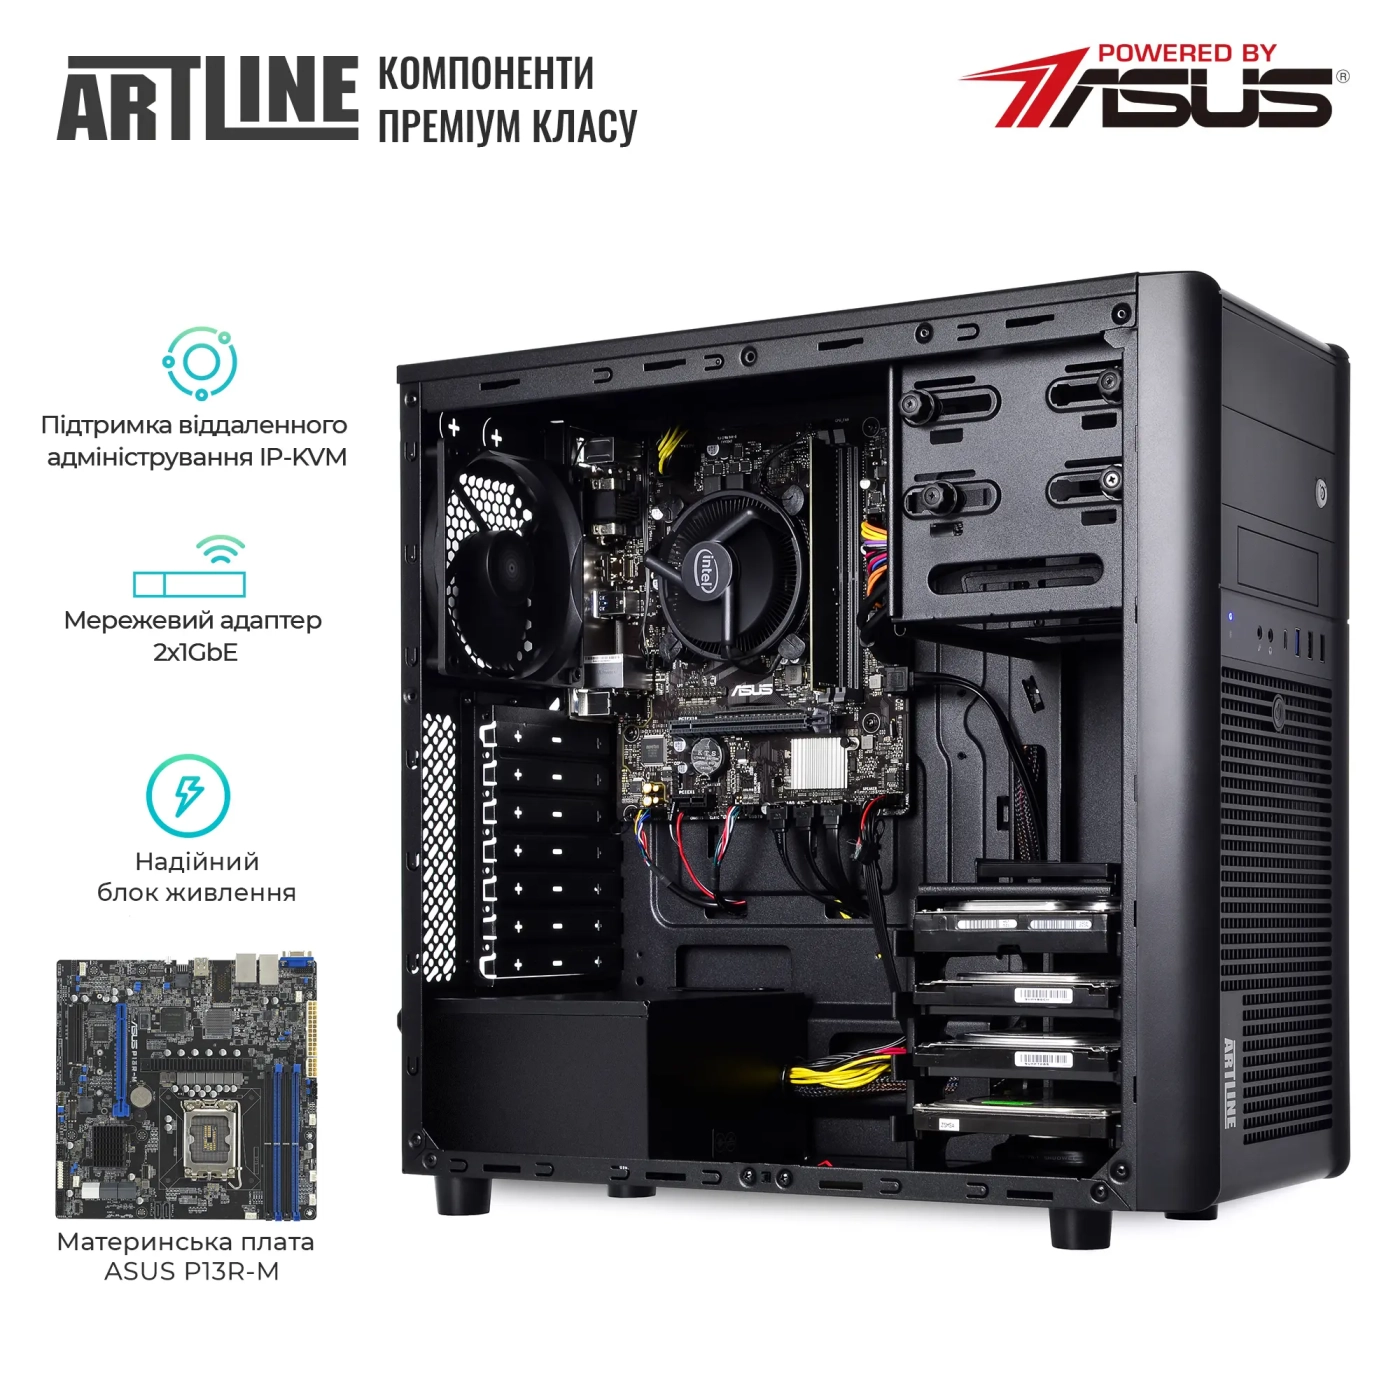 Купить Сервер ARTLINE Business T35 (T35v33) - фото 2